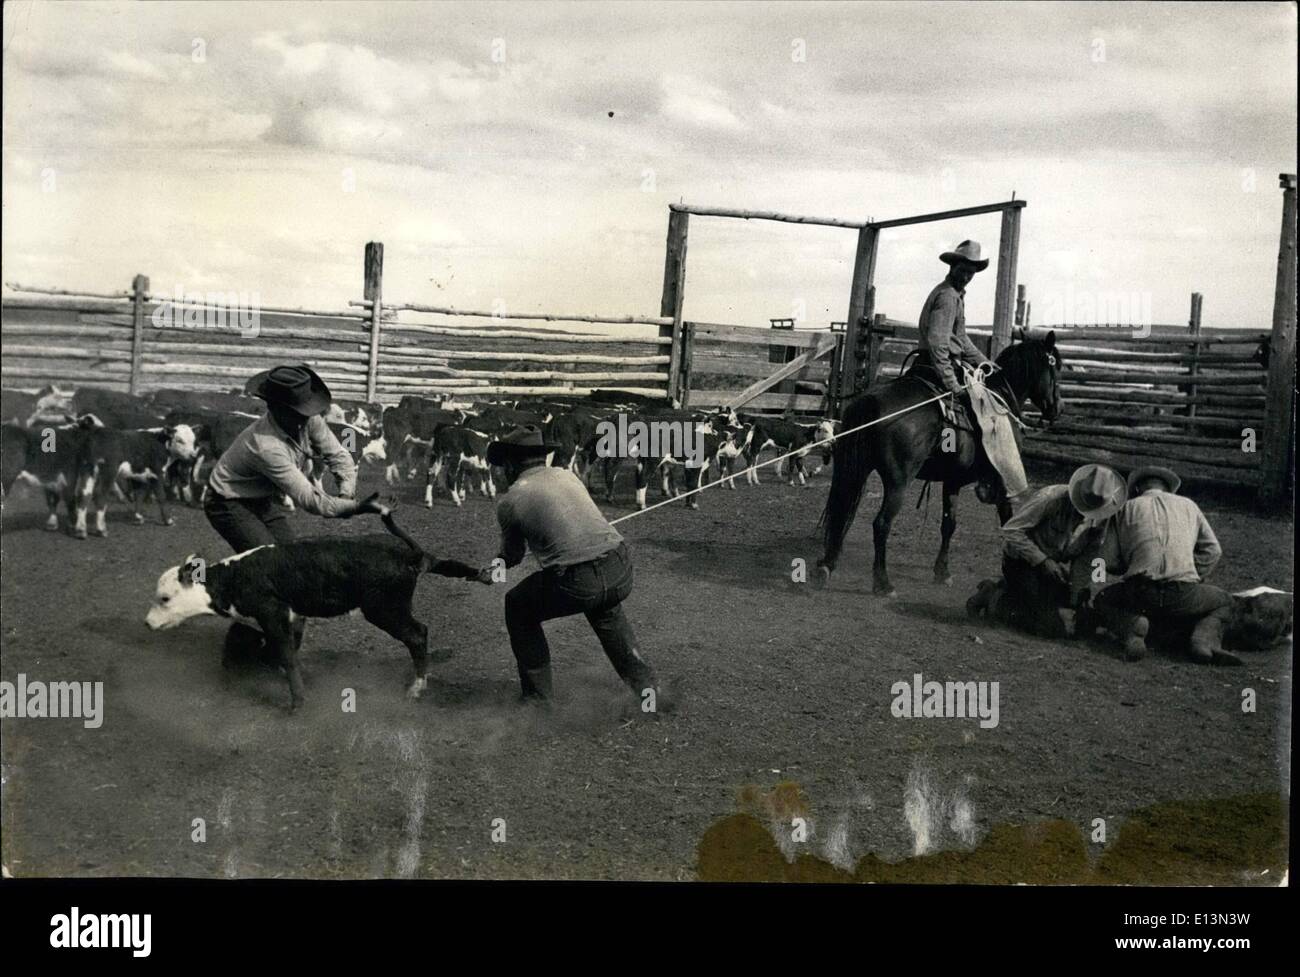 2. März 2012 - ist Kalb gezogen, um der Corral zu zentrieren. Ein Cowboy geht für Seil, andere für Hinterbein. Sie geben eine hieven und die Hälfte ist auf seiner Seite. Gut ausgebildetes Pferd hält das Seil straff, bis Cowboy es lockert. Stockfoto